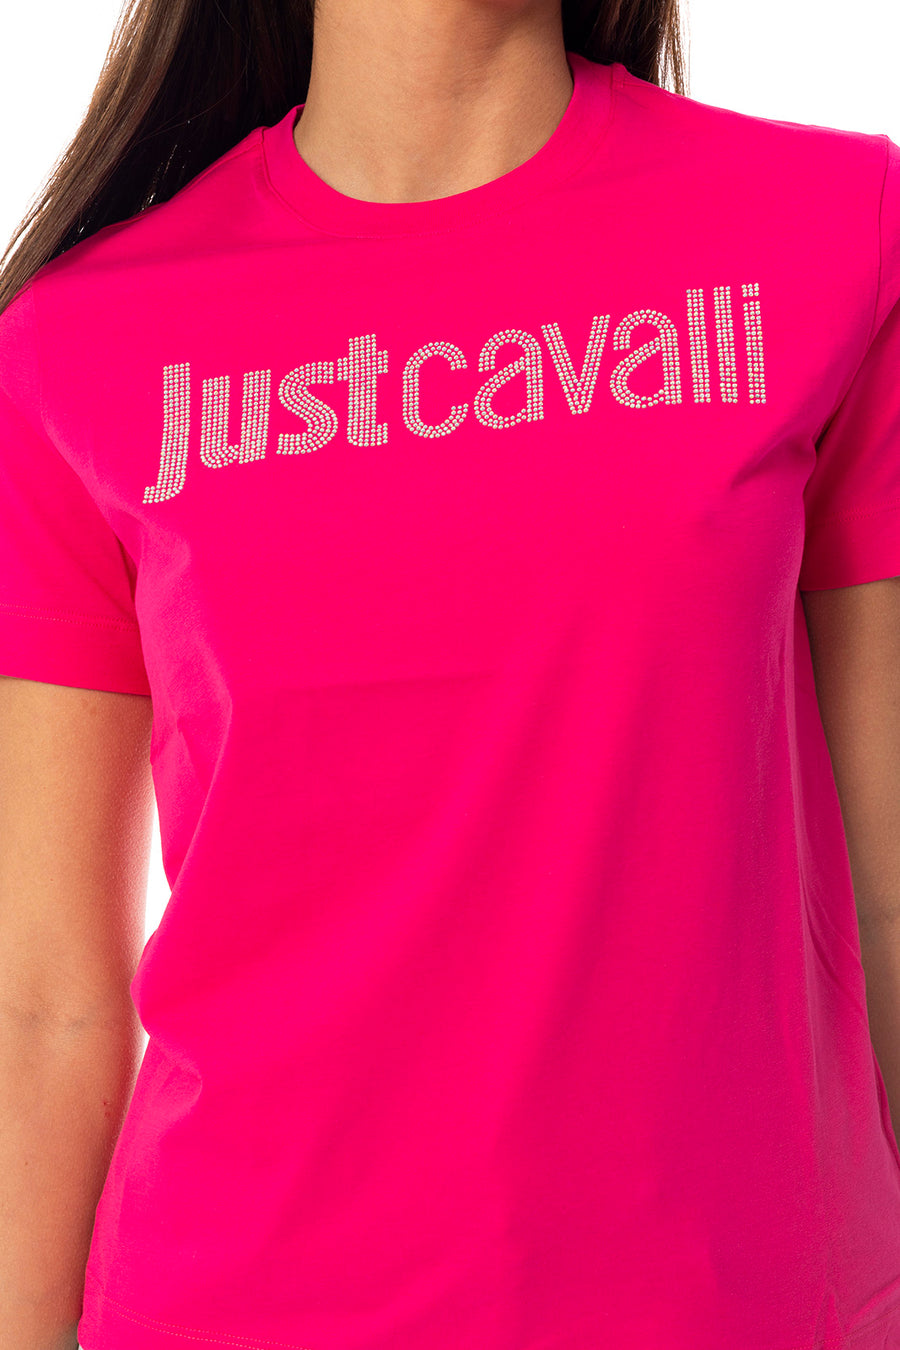 T-shirt JUST CAVALLI 74PBHE01 CJ110